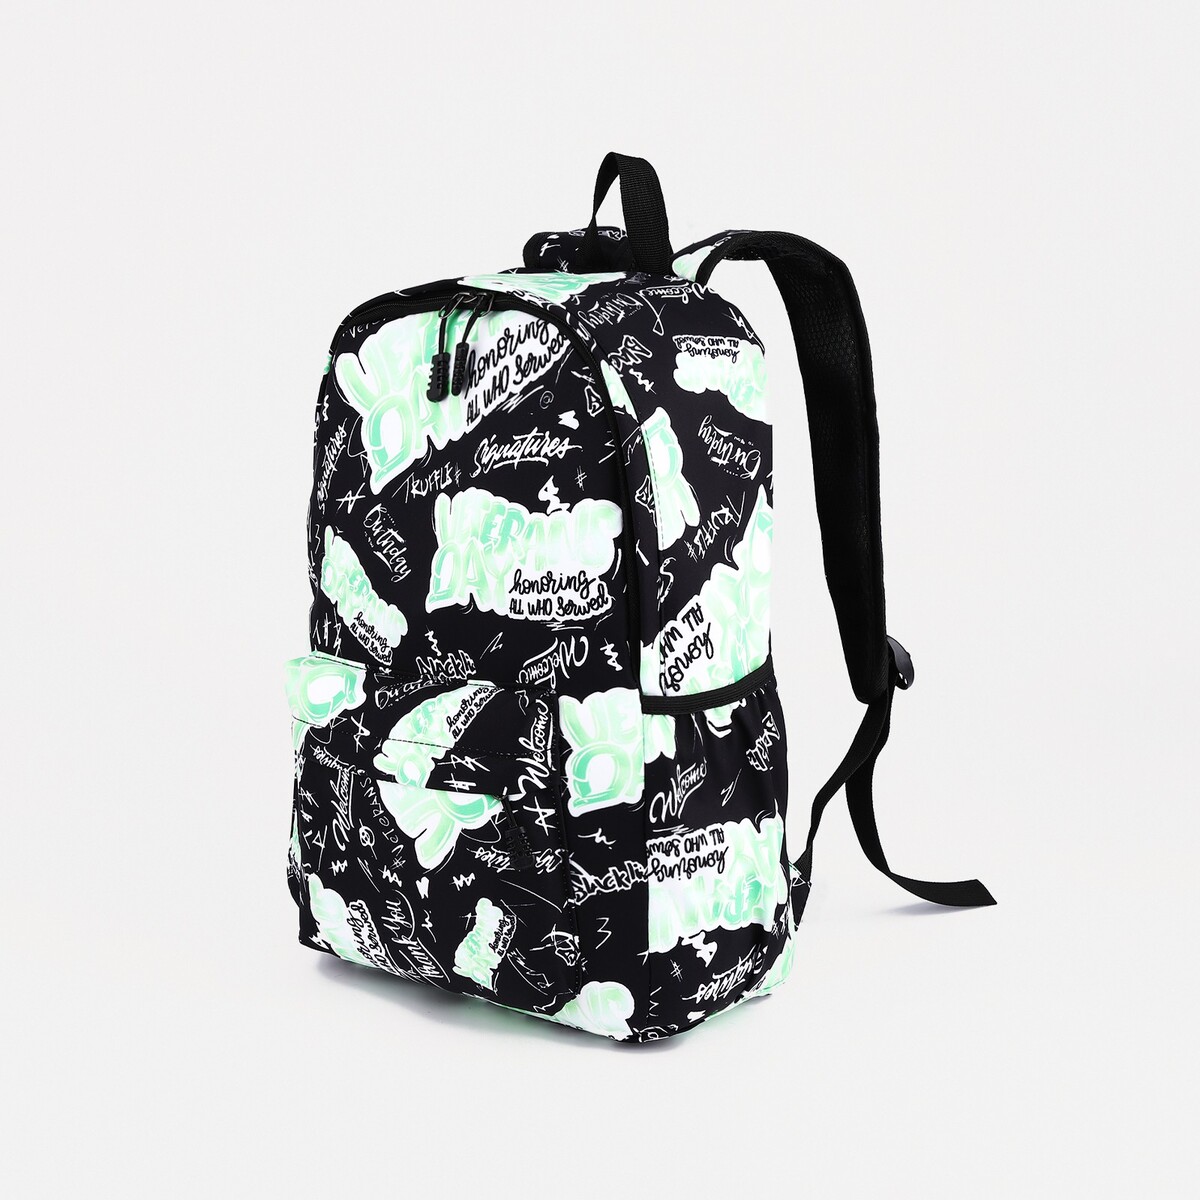 Рюкзак на молнии, 3 наружных кармана, цвет зеленый/черный рюкзак школьный из текстиля на молнии 3 кармана зеленый